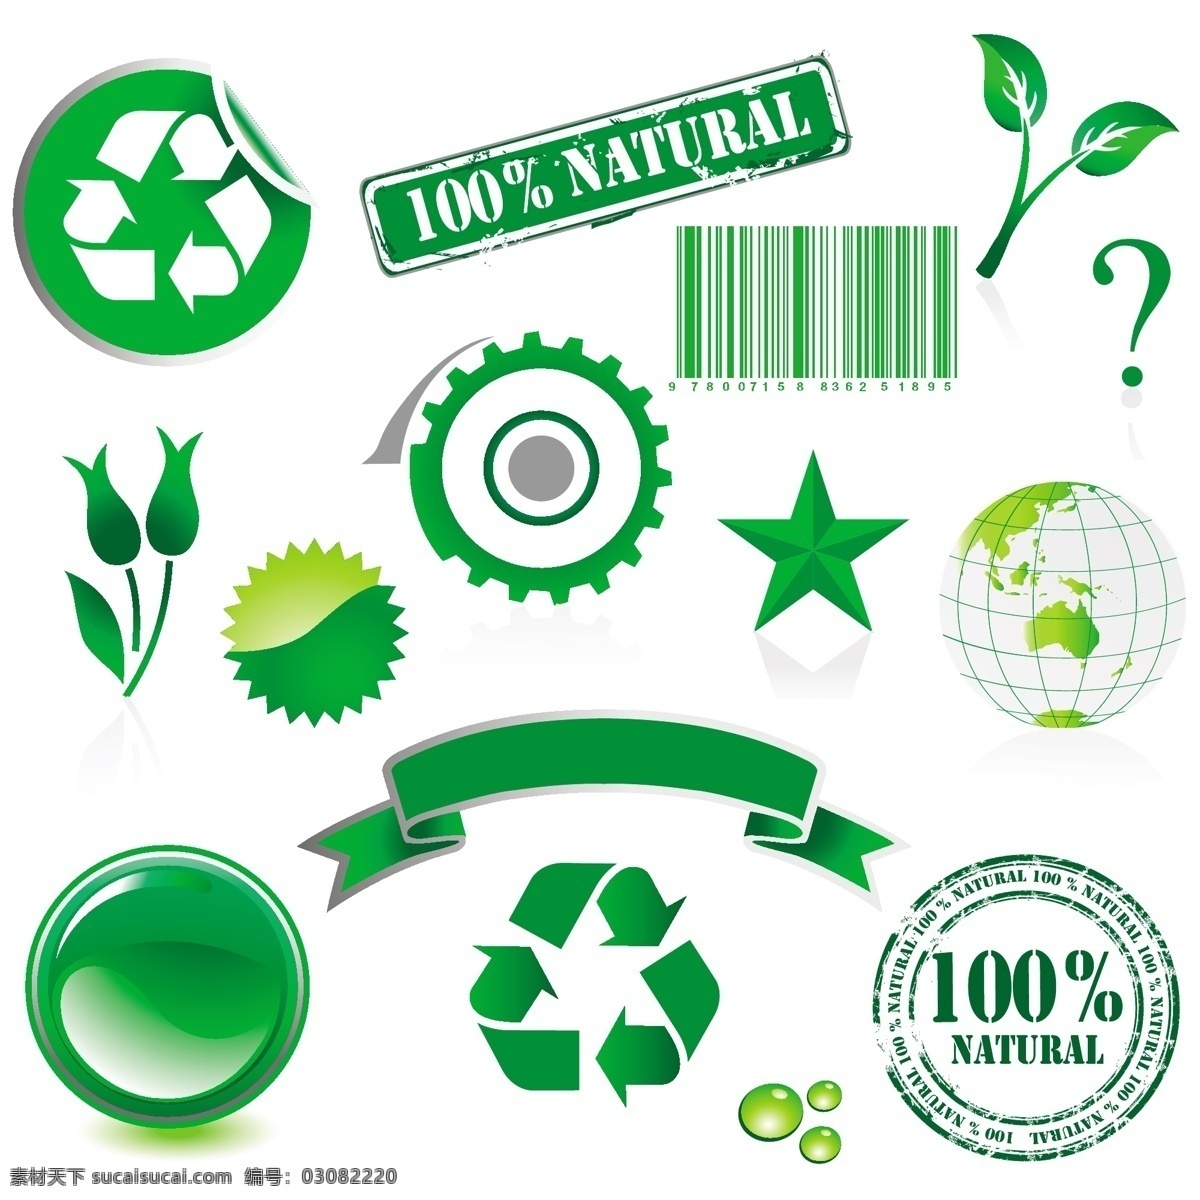 环保主题矢量 按钮 标签 标志 齿轮 绸带 地球 环境 节 可回收 绿色 条码 露滴 元素 五个五角星 绿色的树叶 图案 丝带 印章 矢量图 其他矢量图